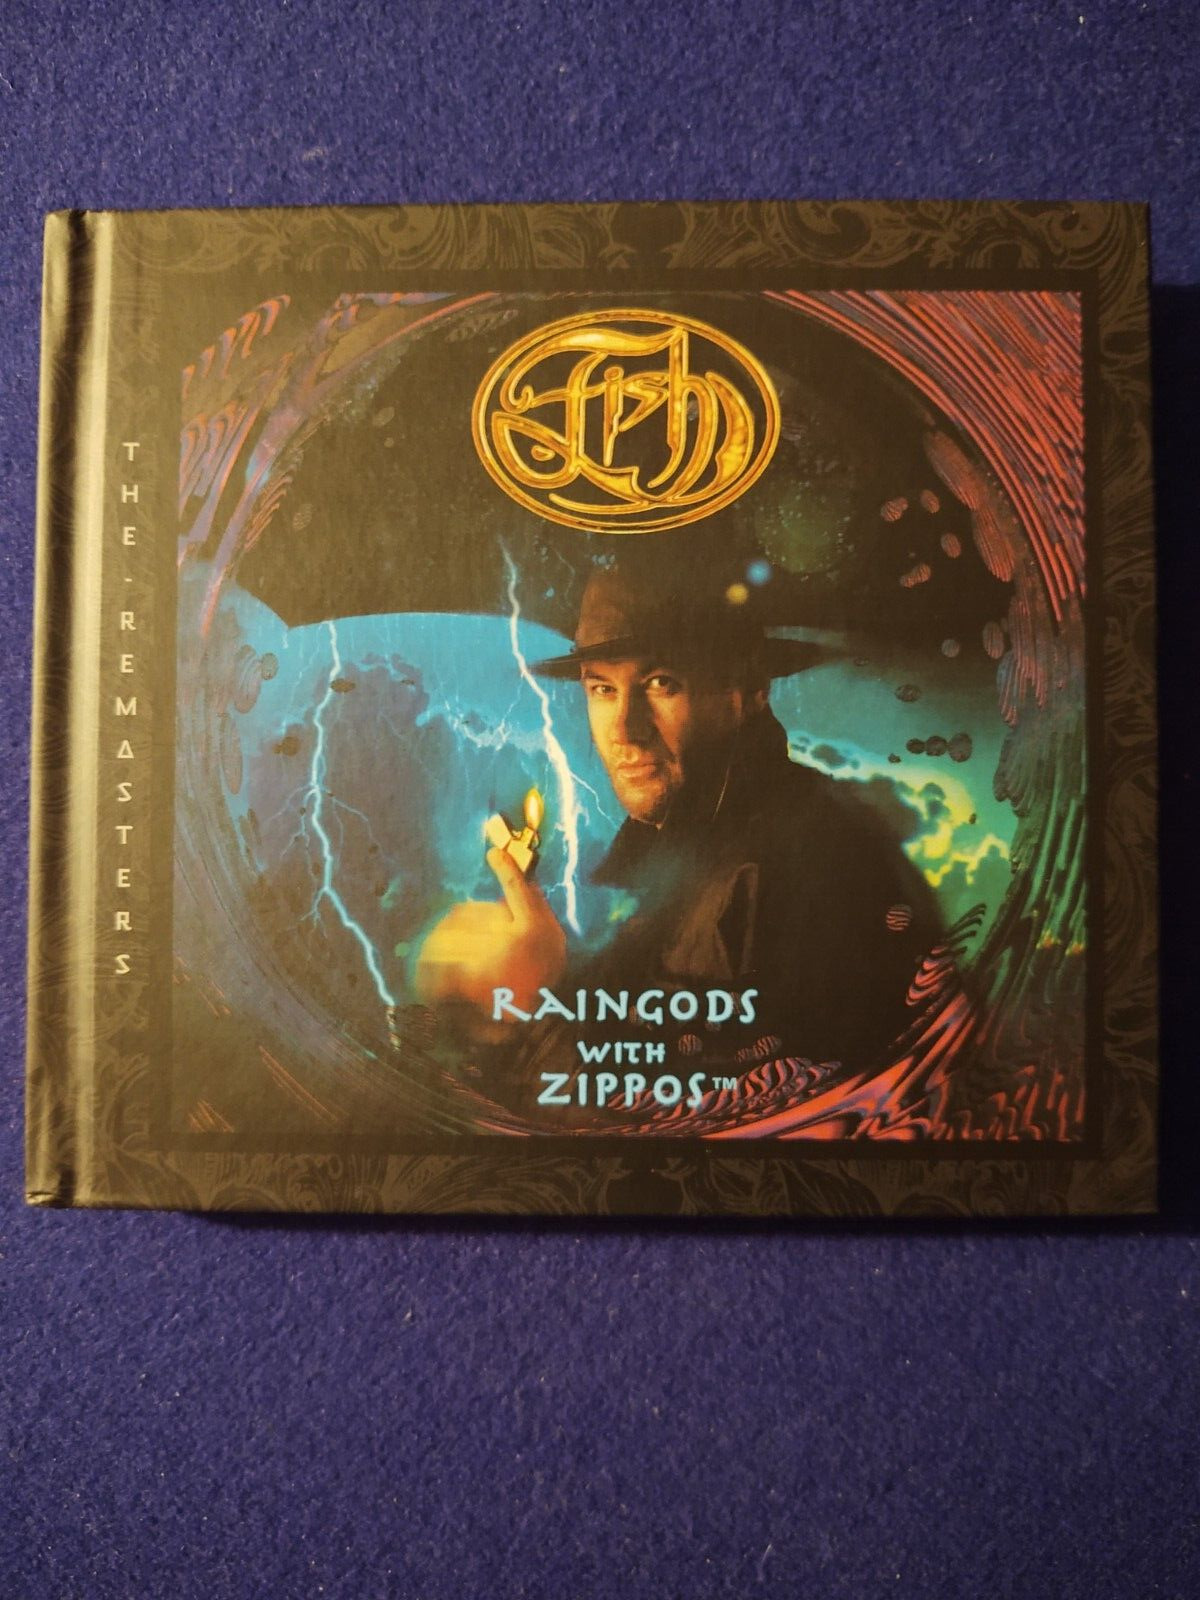 Fish--Raingods With Zippos 3 CD